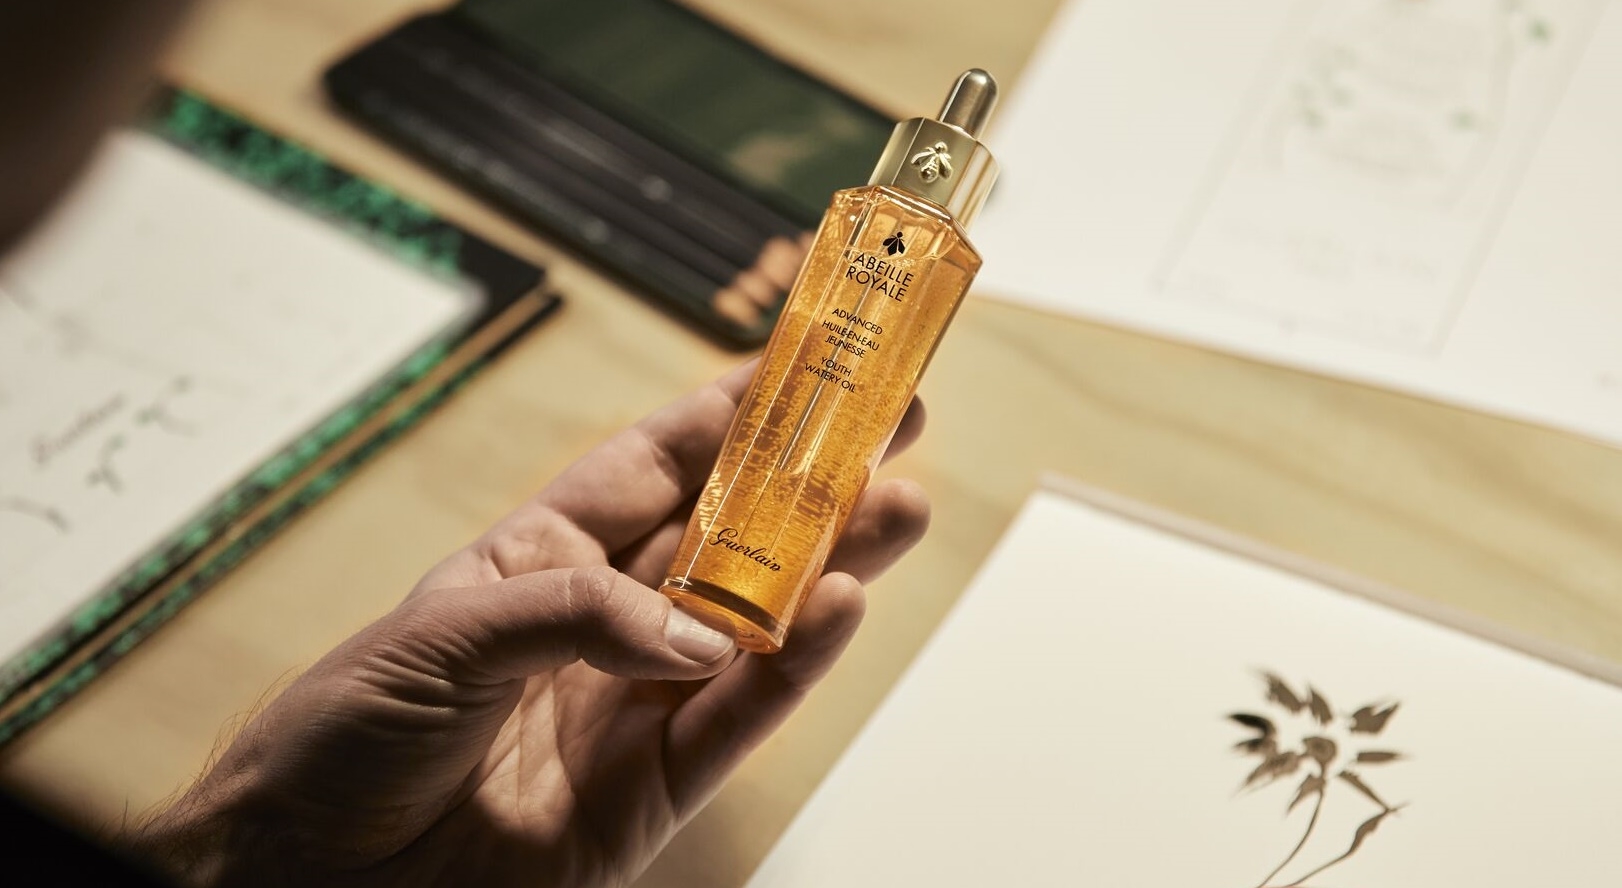 520世界蜜蜂日 嬌蘭限量版瓶身啟動保育計畫